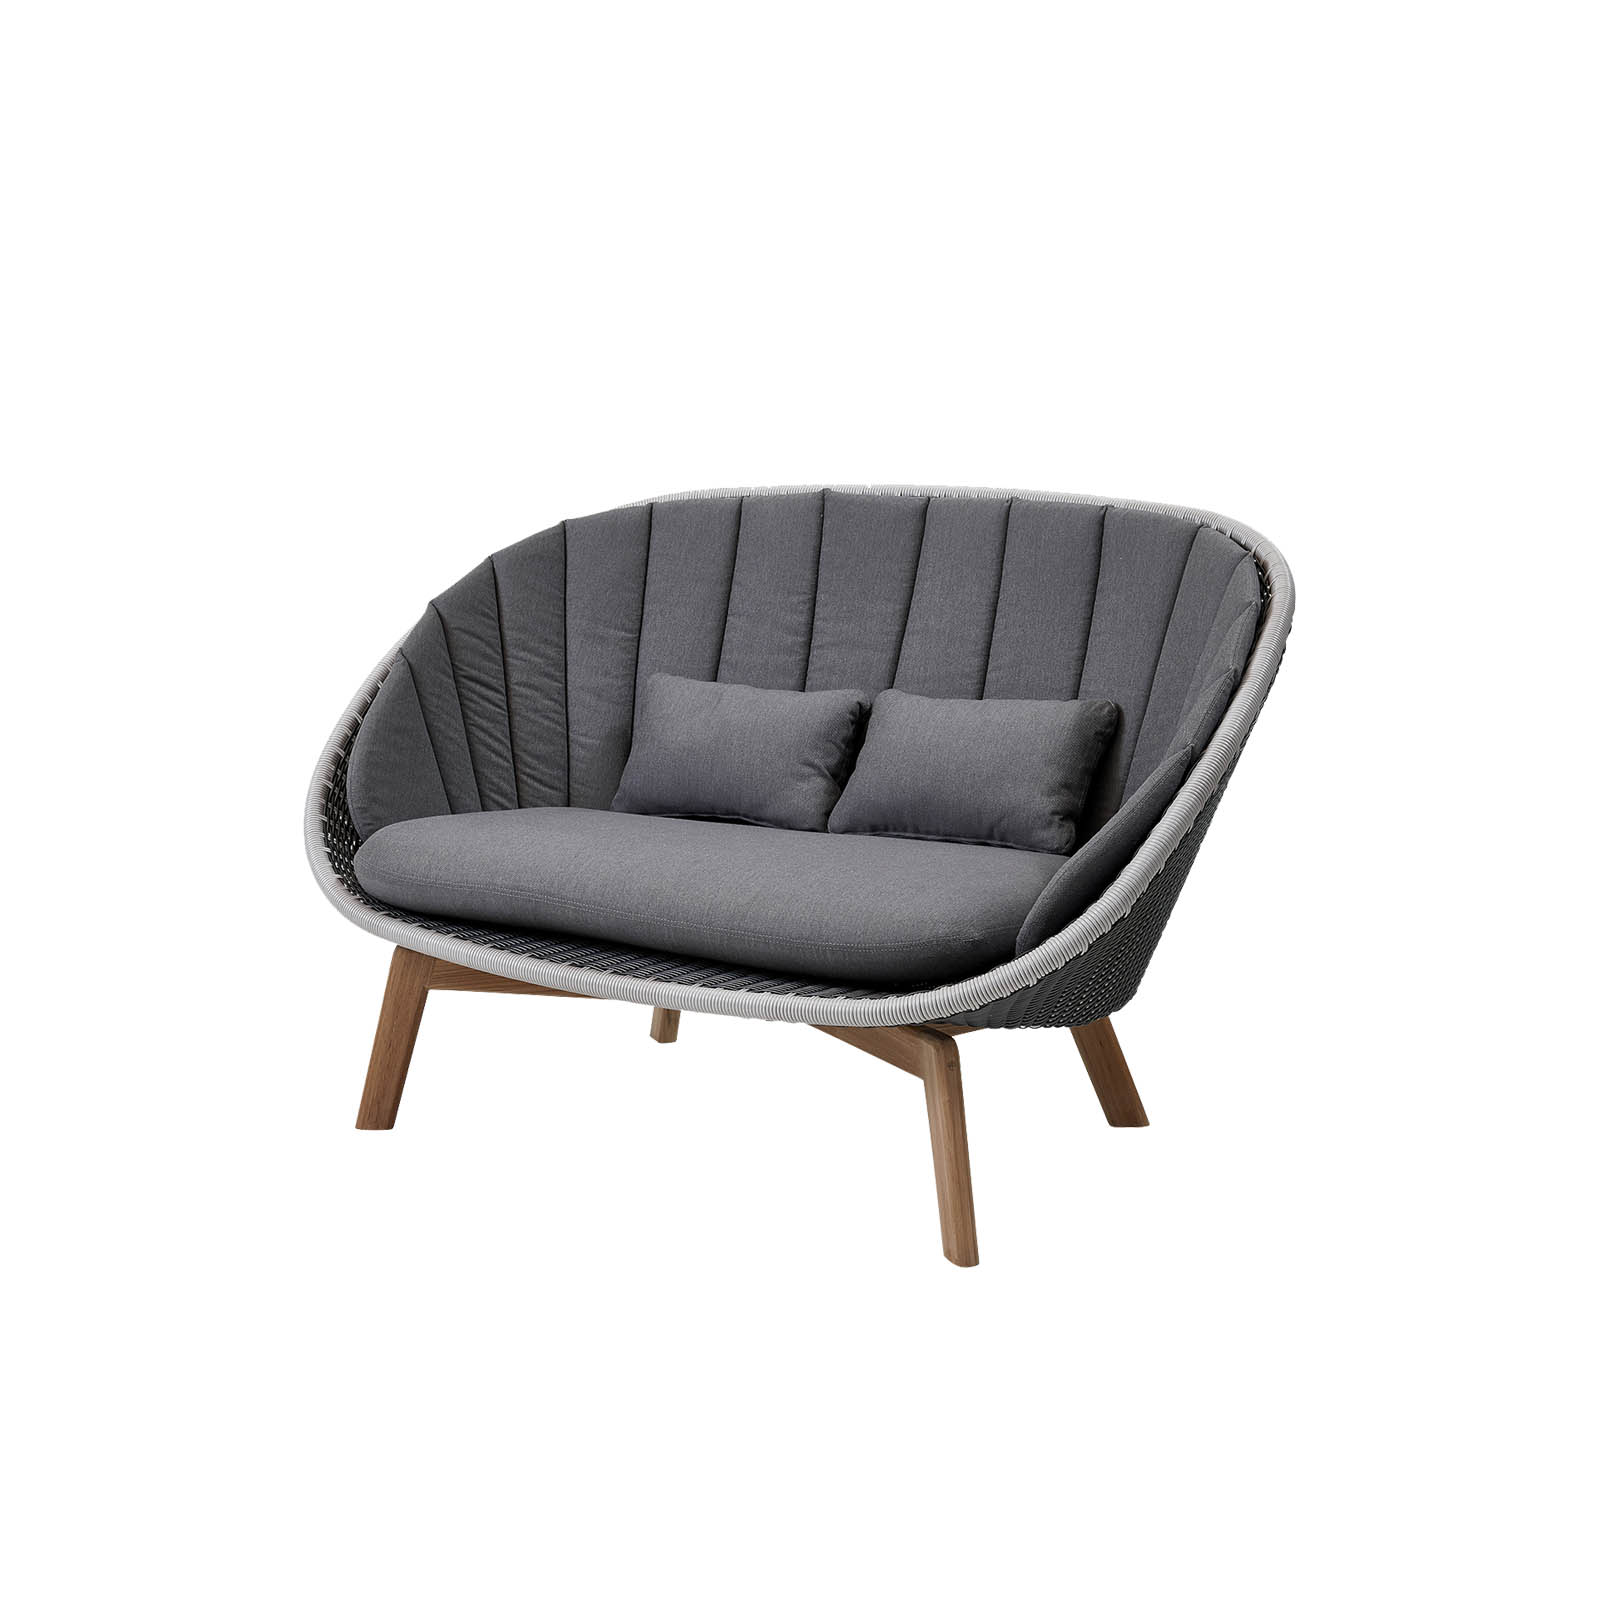 Peacock 2-Sitzer Sofa aus Cane-line Weave in Light Grey mit Kissen aus Cane-line Natté in Grey